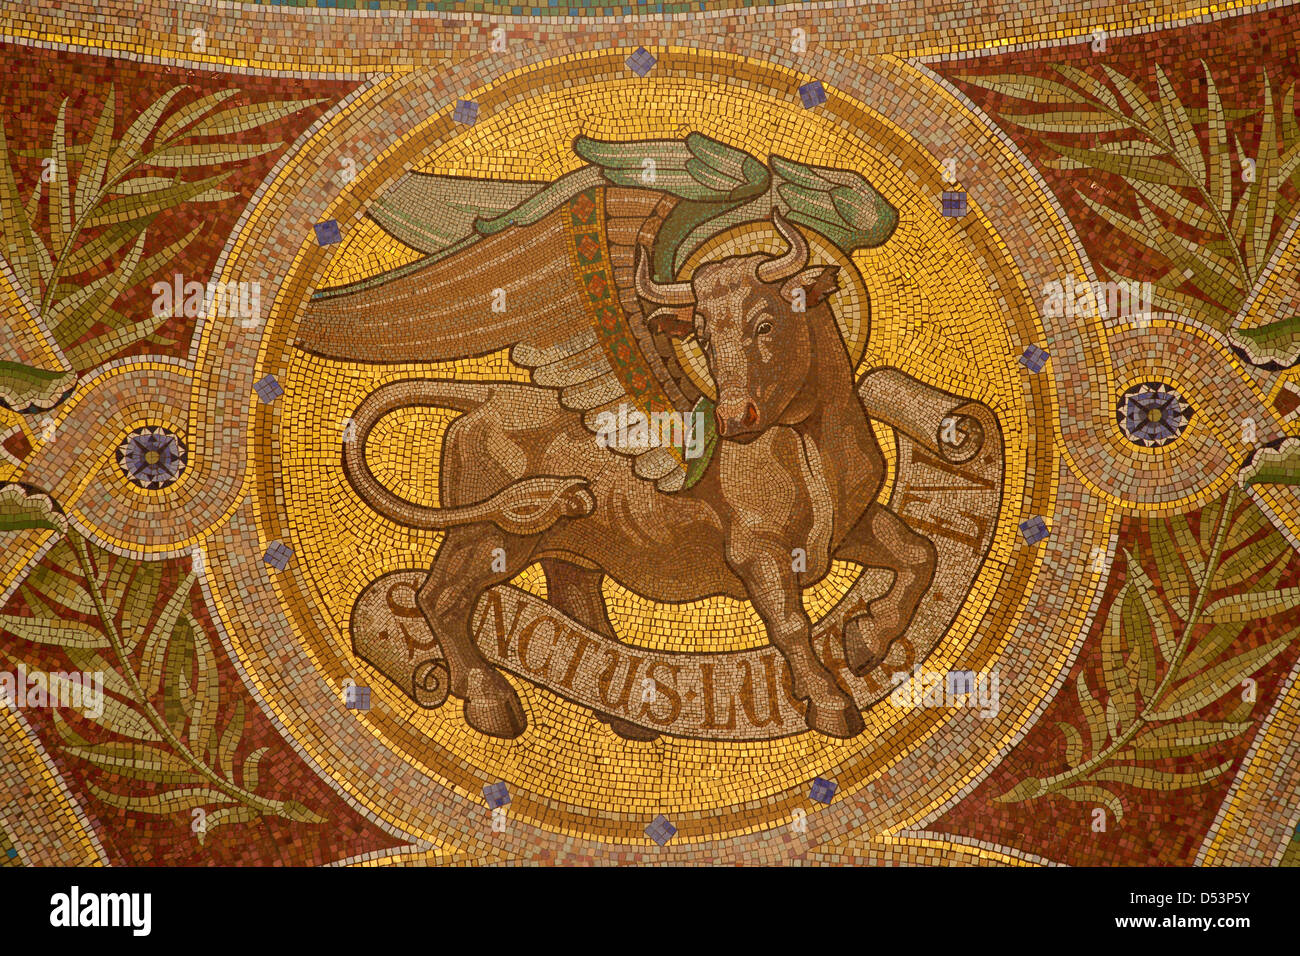 MADRID - 9 Marzo: mosaico di bull come simbolo di san Luca evangelista nella Iglesia de San Manuel y San Benito Foto Stock